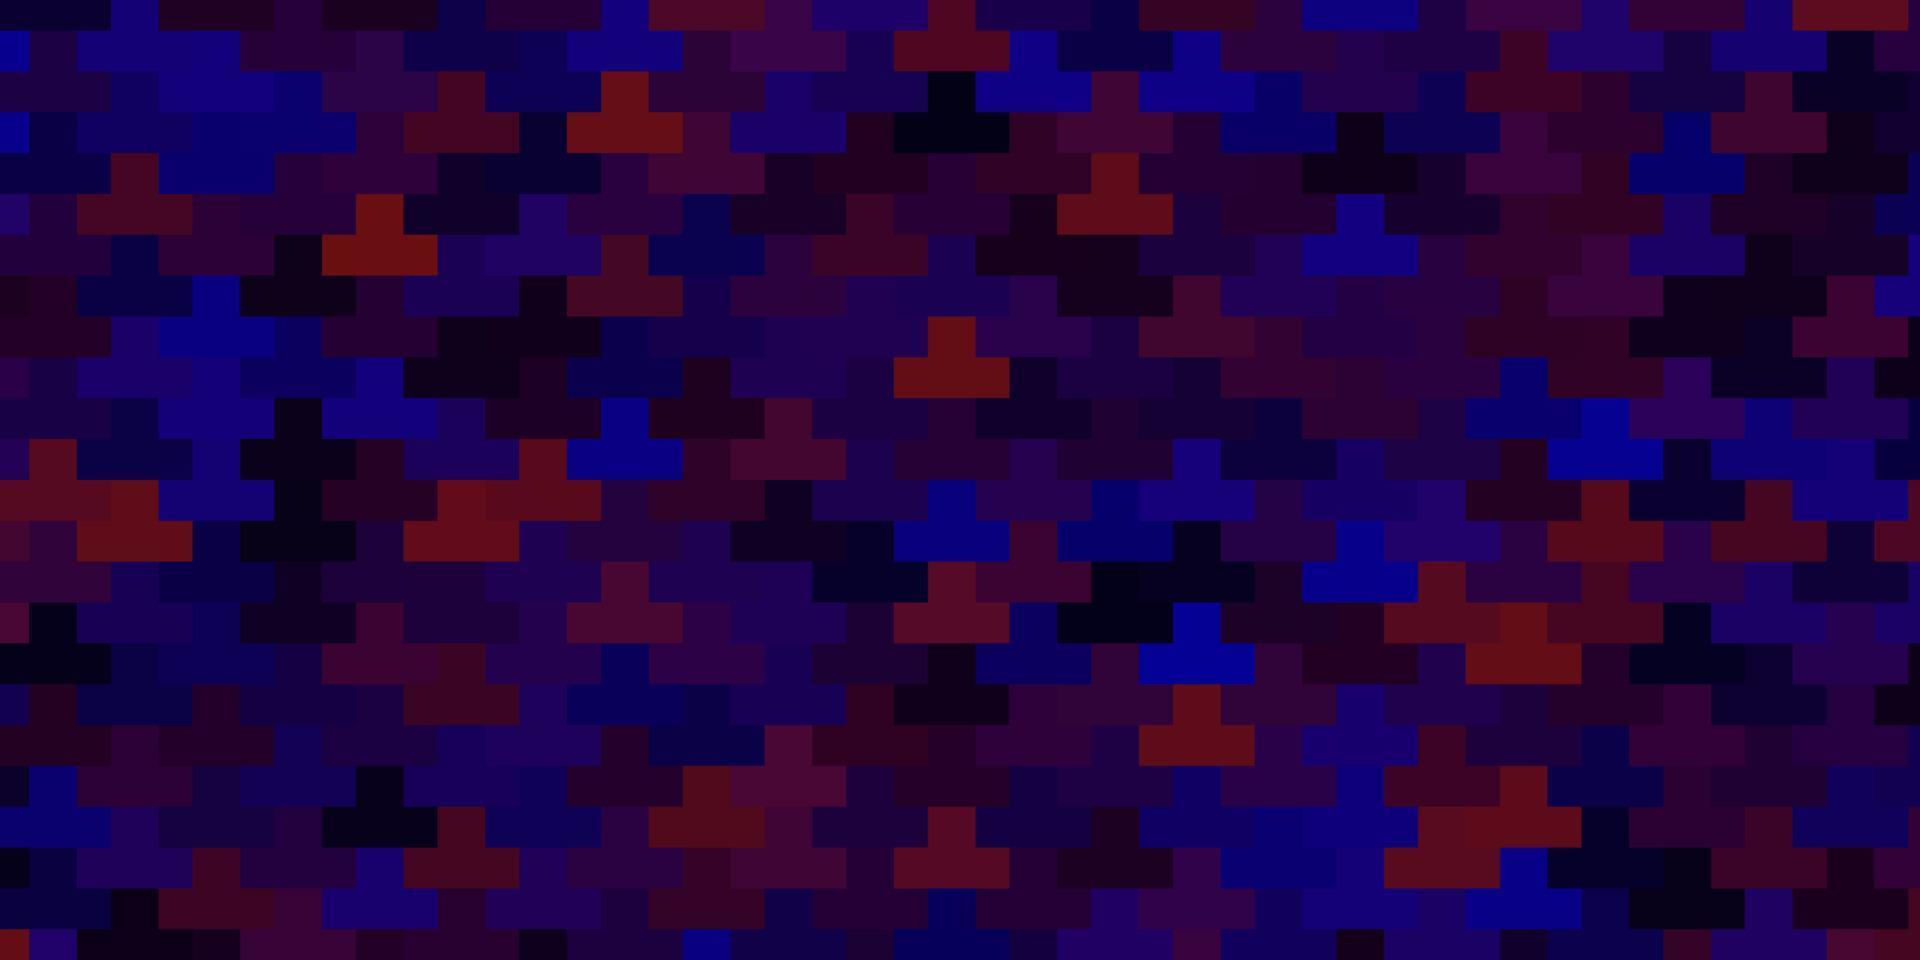 fond de vecteur bleu foncé, rouge avec des rectangles.